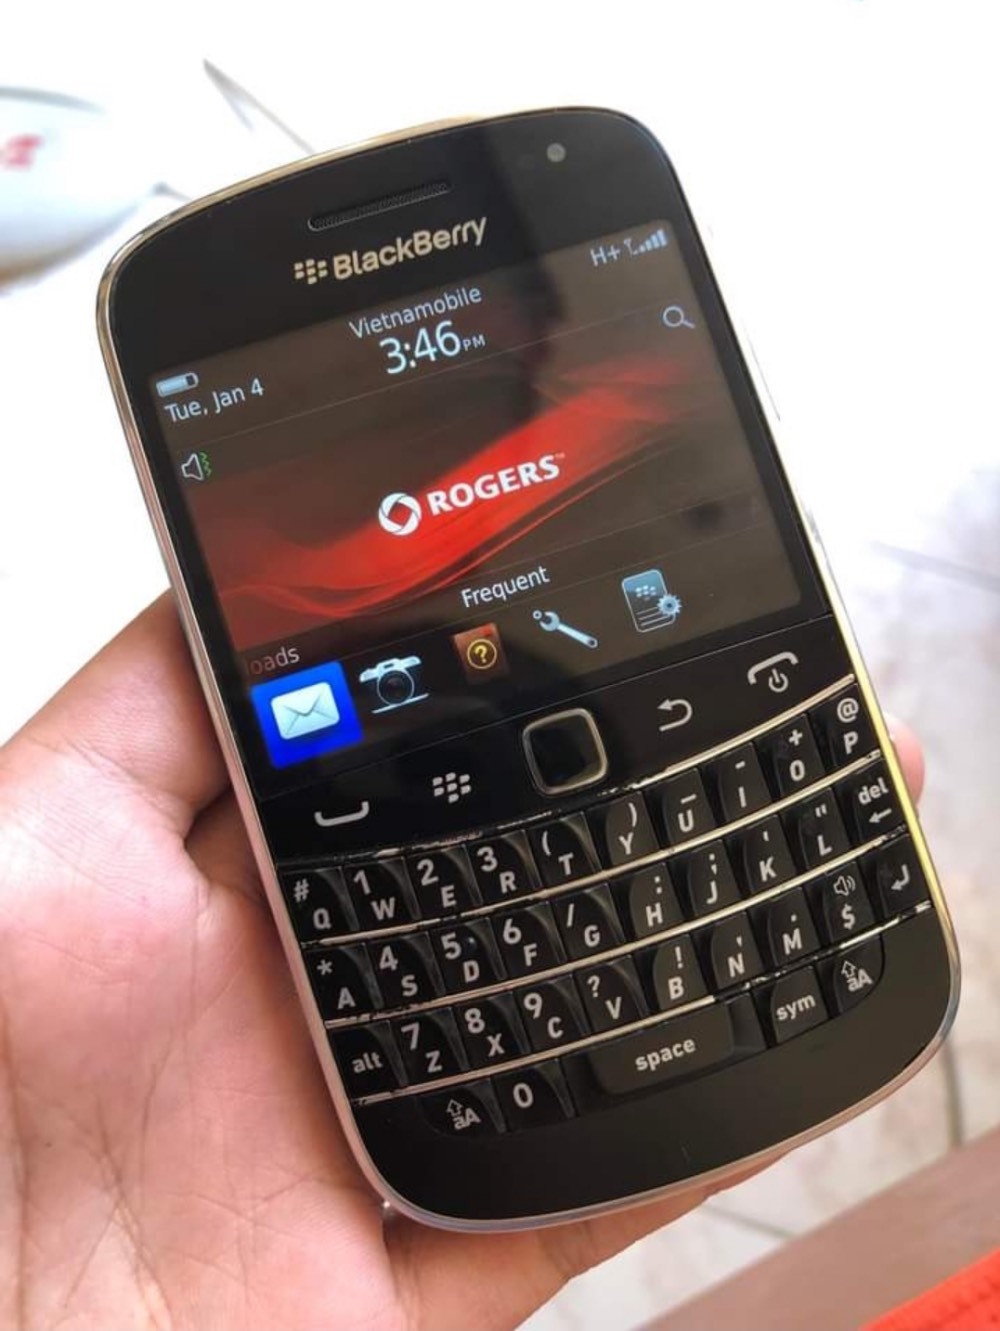 Điện thoại BlackBerry sử dụng được tại Việt Nam, nhưng người mua vẫn hoang mang